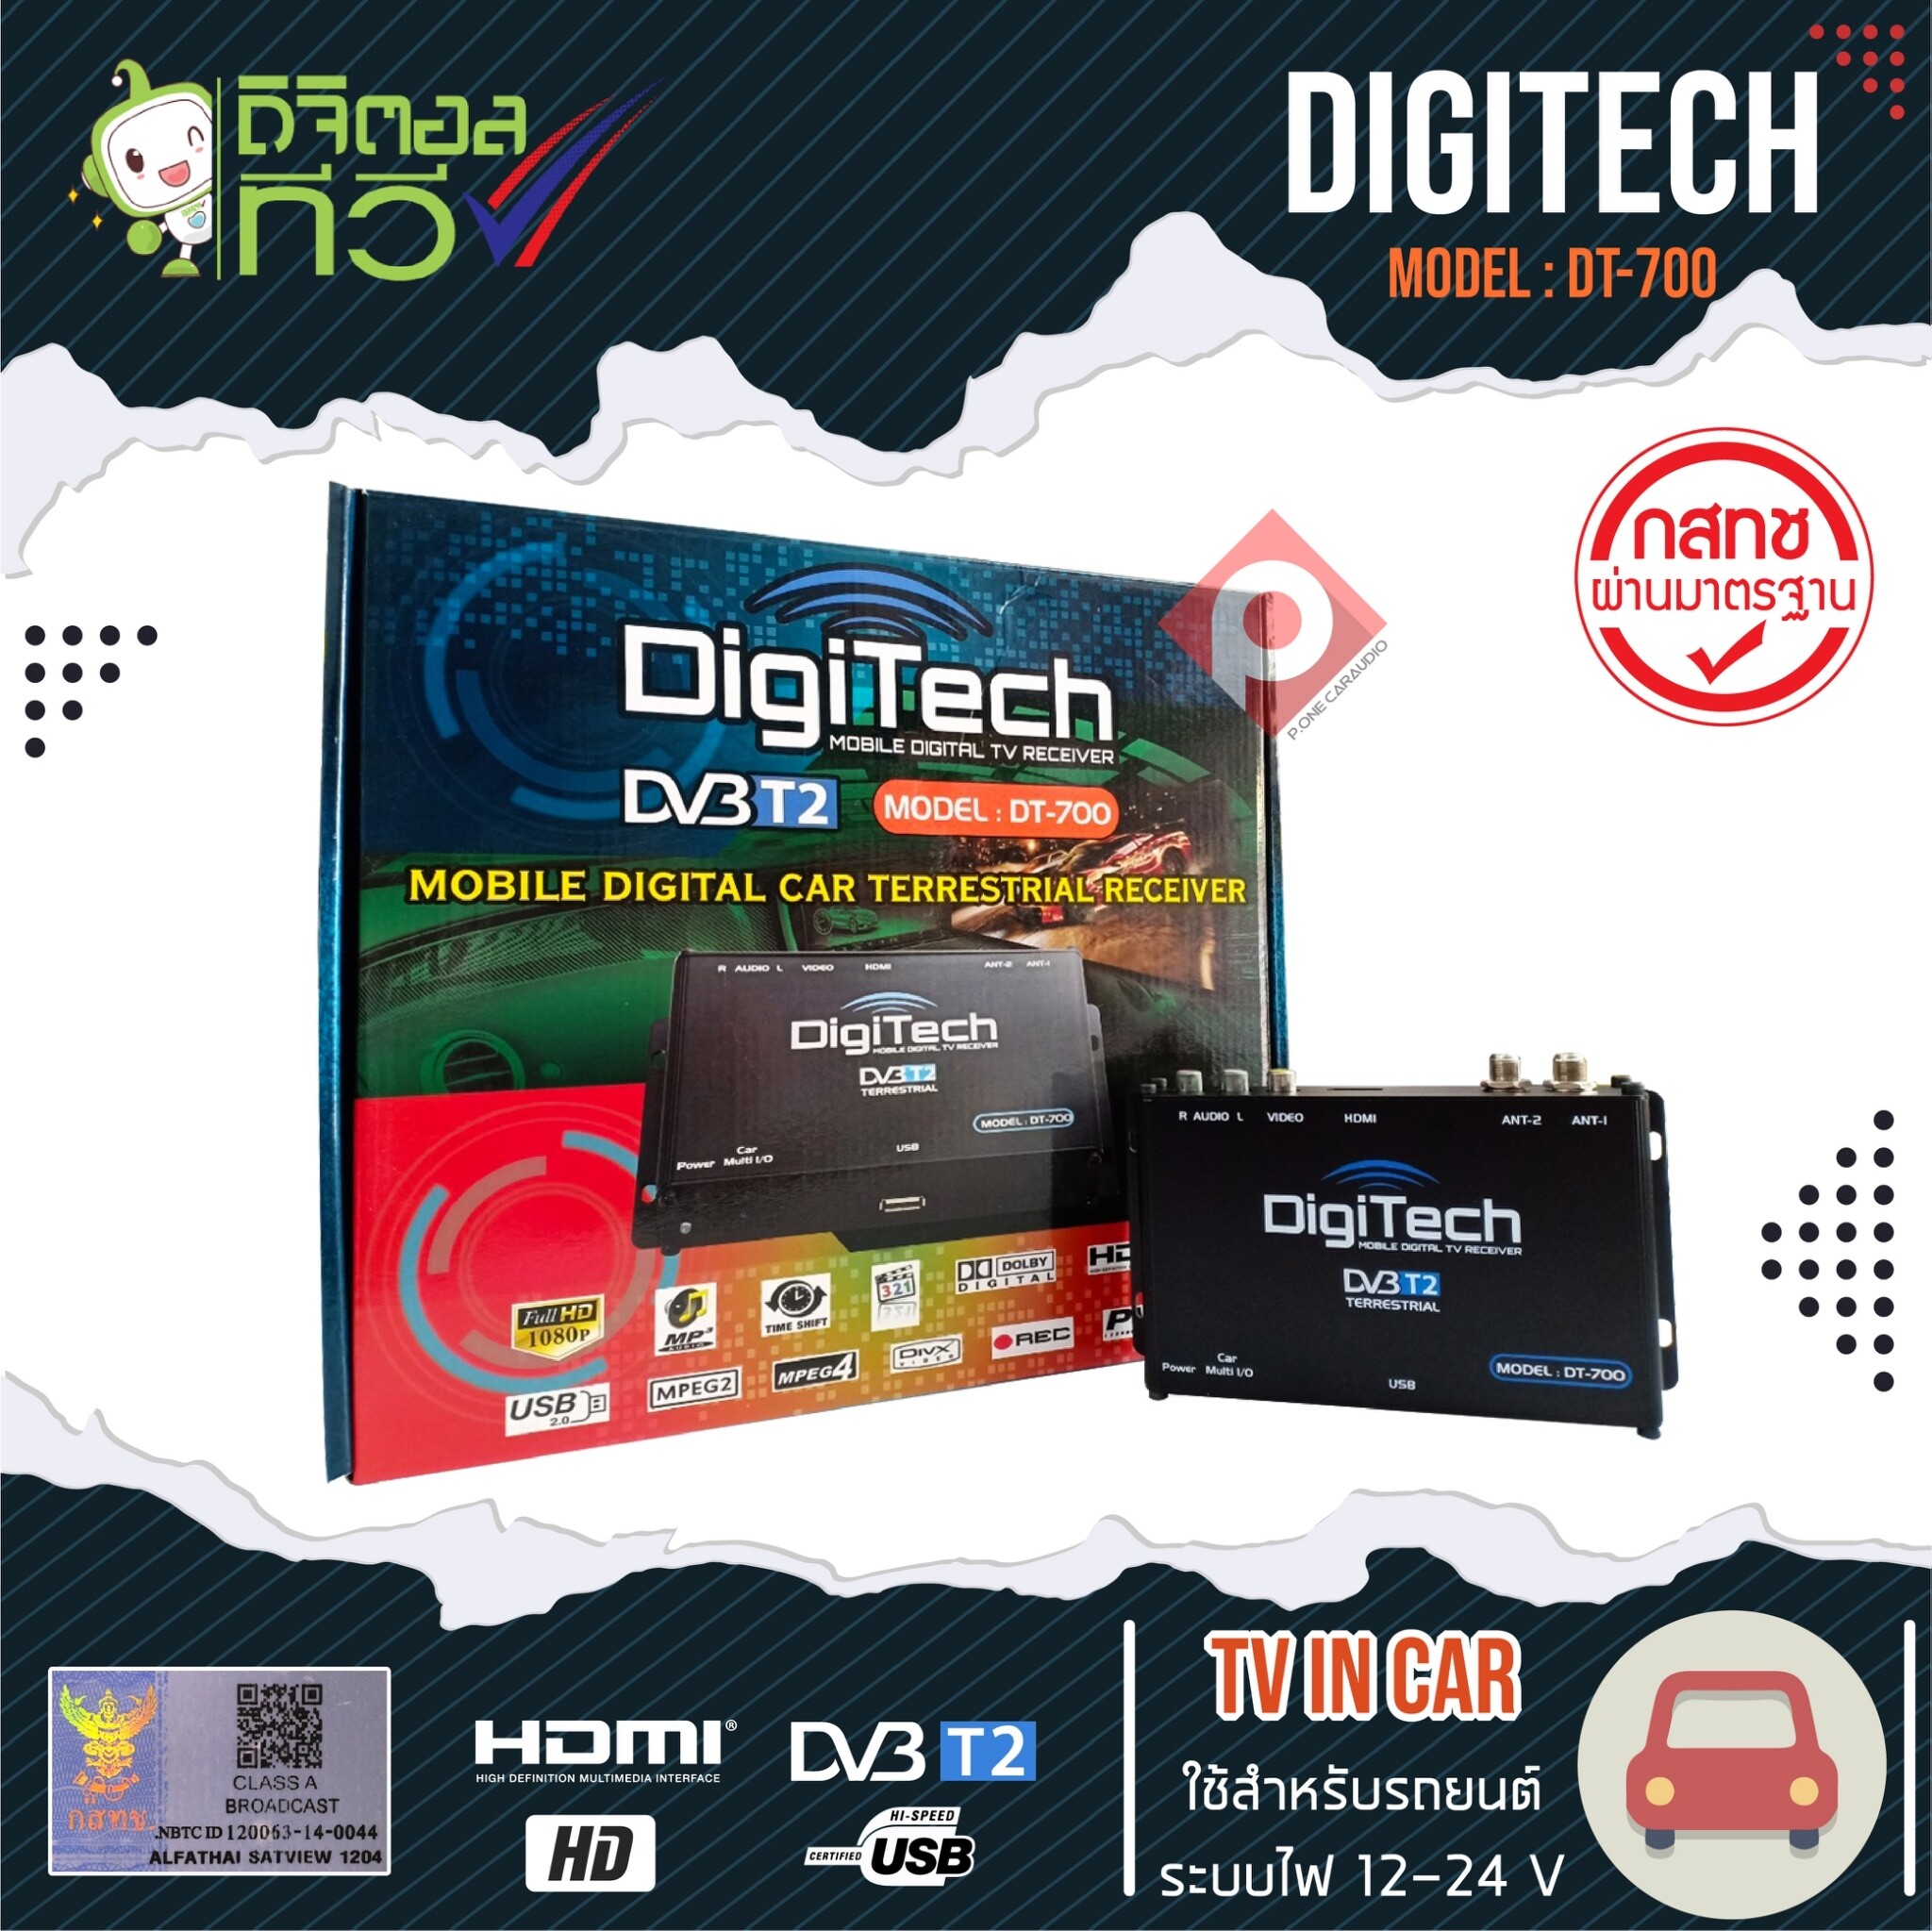 กล่องทีวีดิจิตอลรถยนต์ DIGITECH DT-700 เสาสัญญาณทีวี 2 ชุด  AV Line out แบบ HDMI คมชัดในระบบ Full HD ทั้งภาพและเสียง